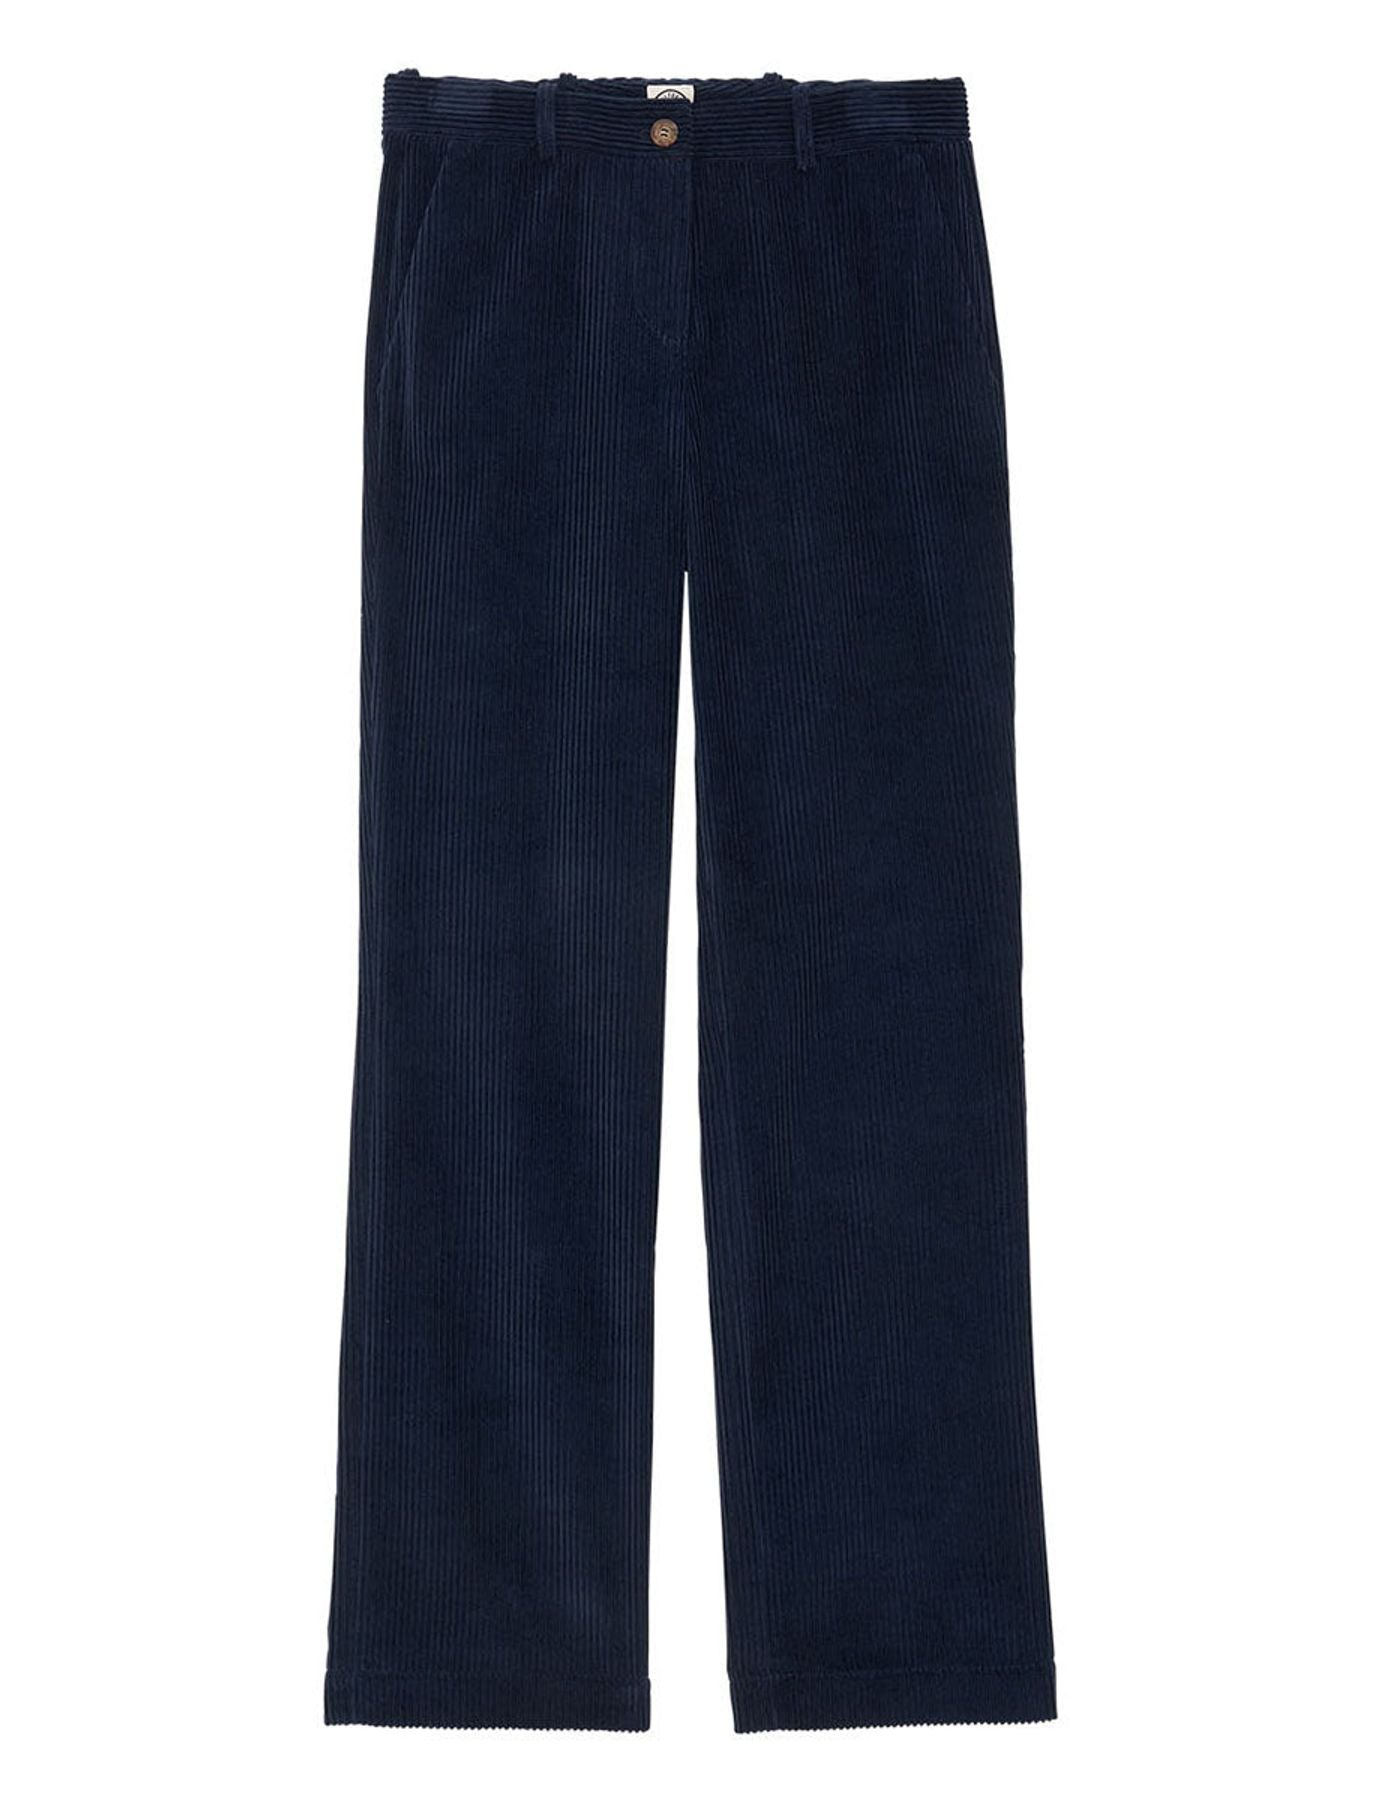 pantalon-francisco-bleu-marine-en-coton